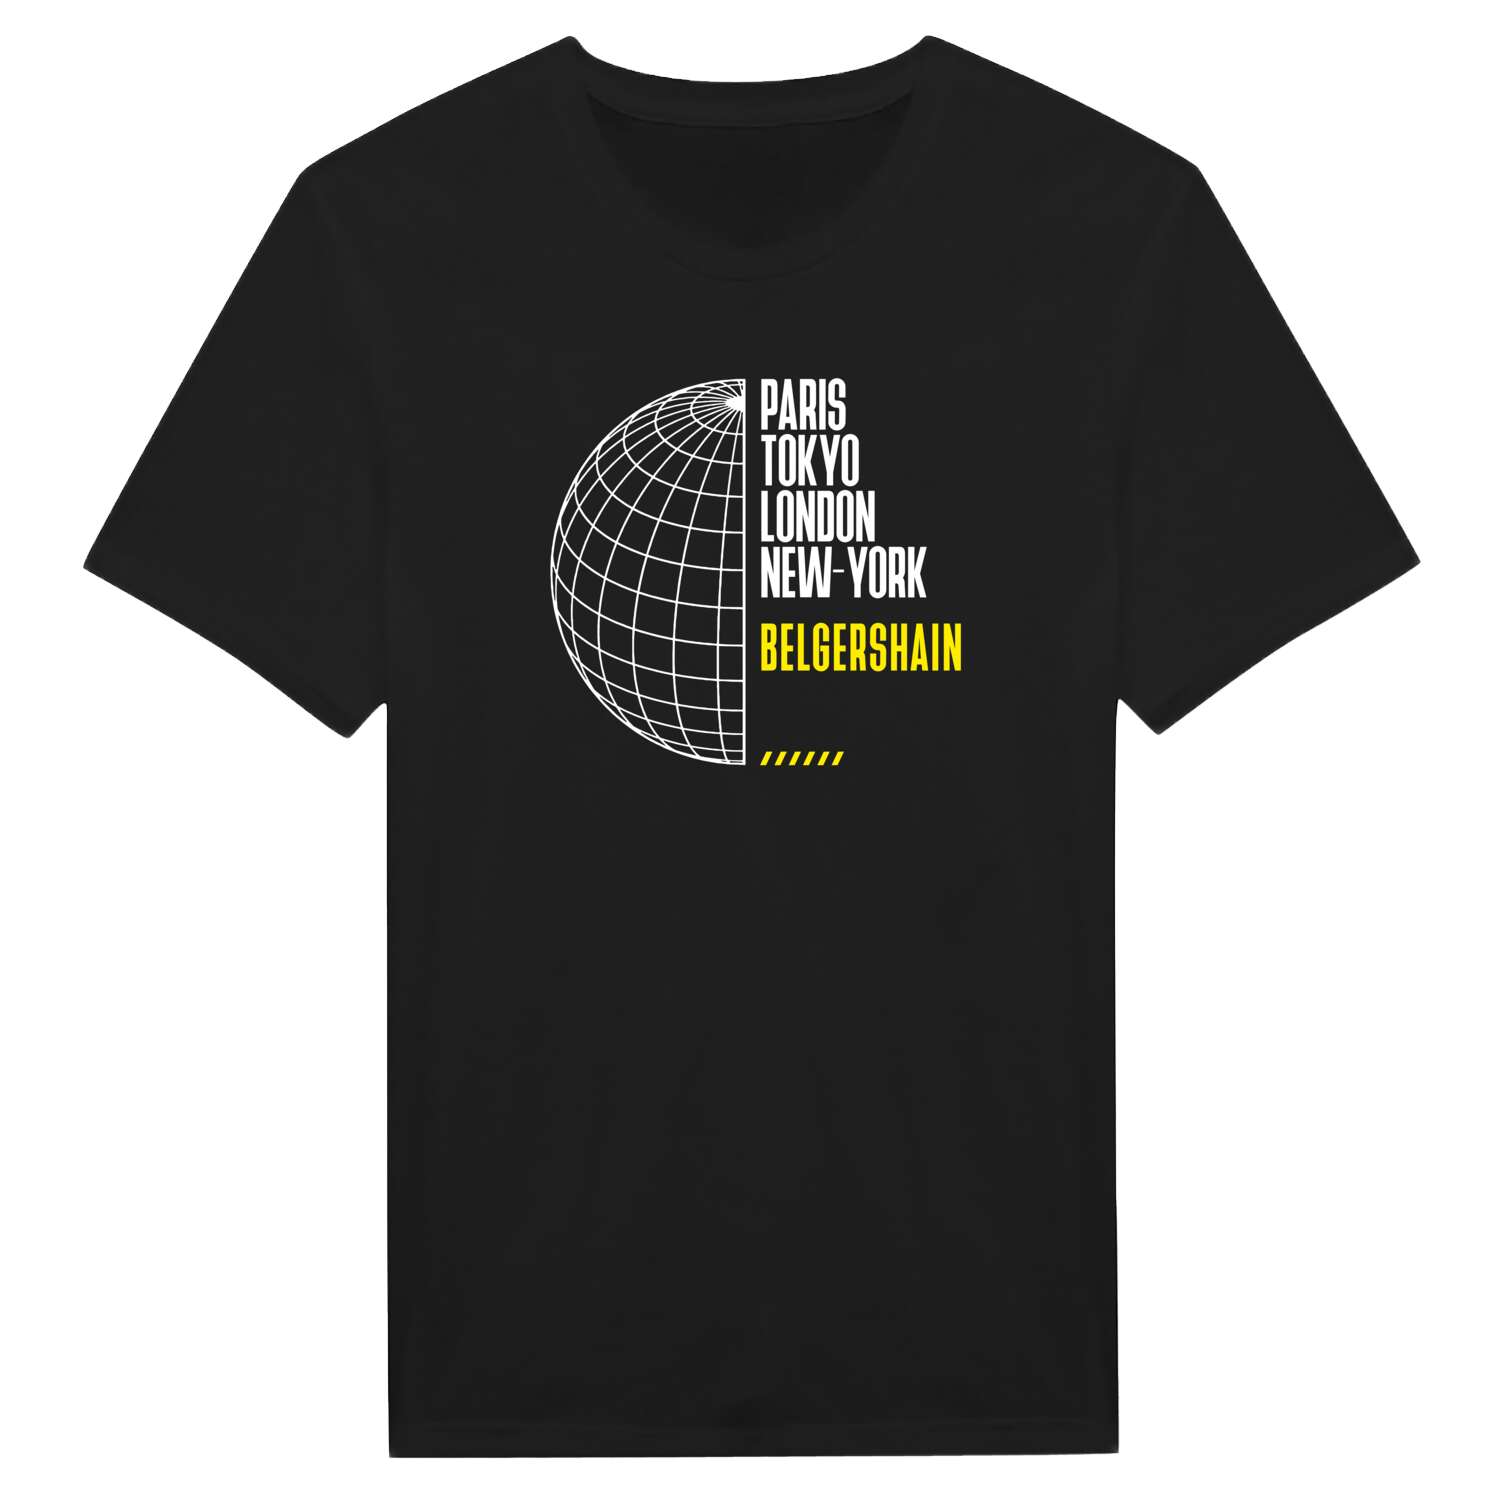 Belgershain T-Shirt »Paris Tokyo London«